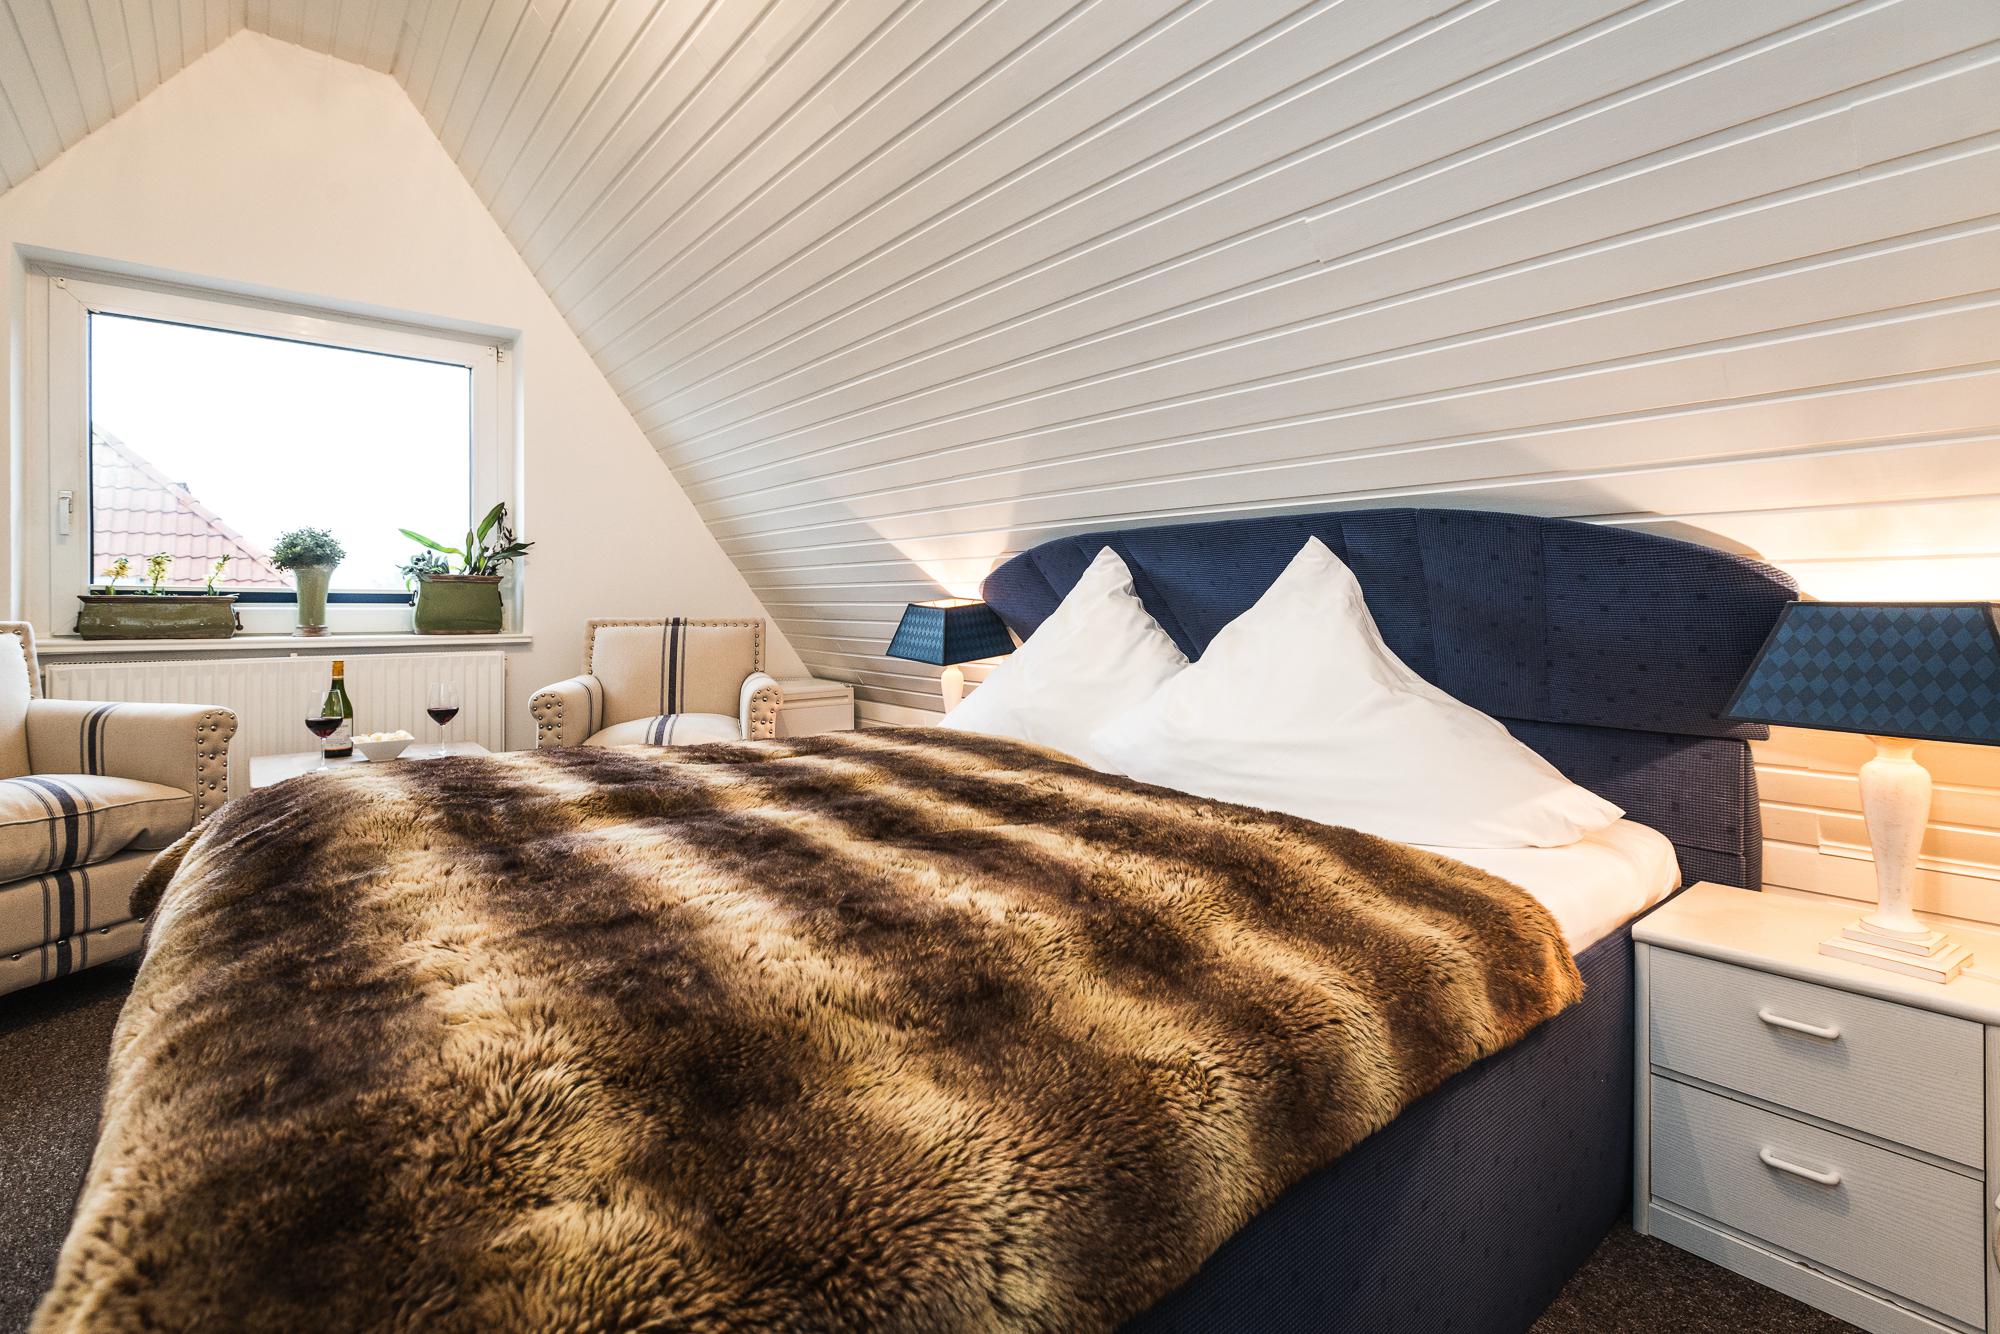 Gemütliches Wohn- Schlafzimmer mit Doppelbett im Hotel Landhaus Sylter Hahn in Westerland.